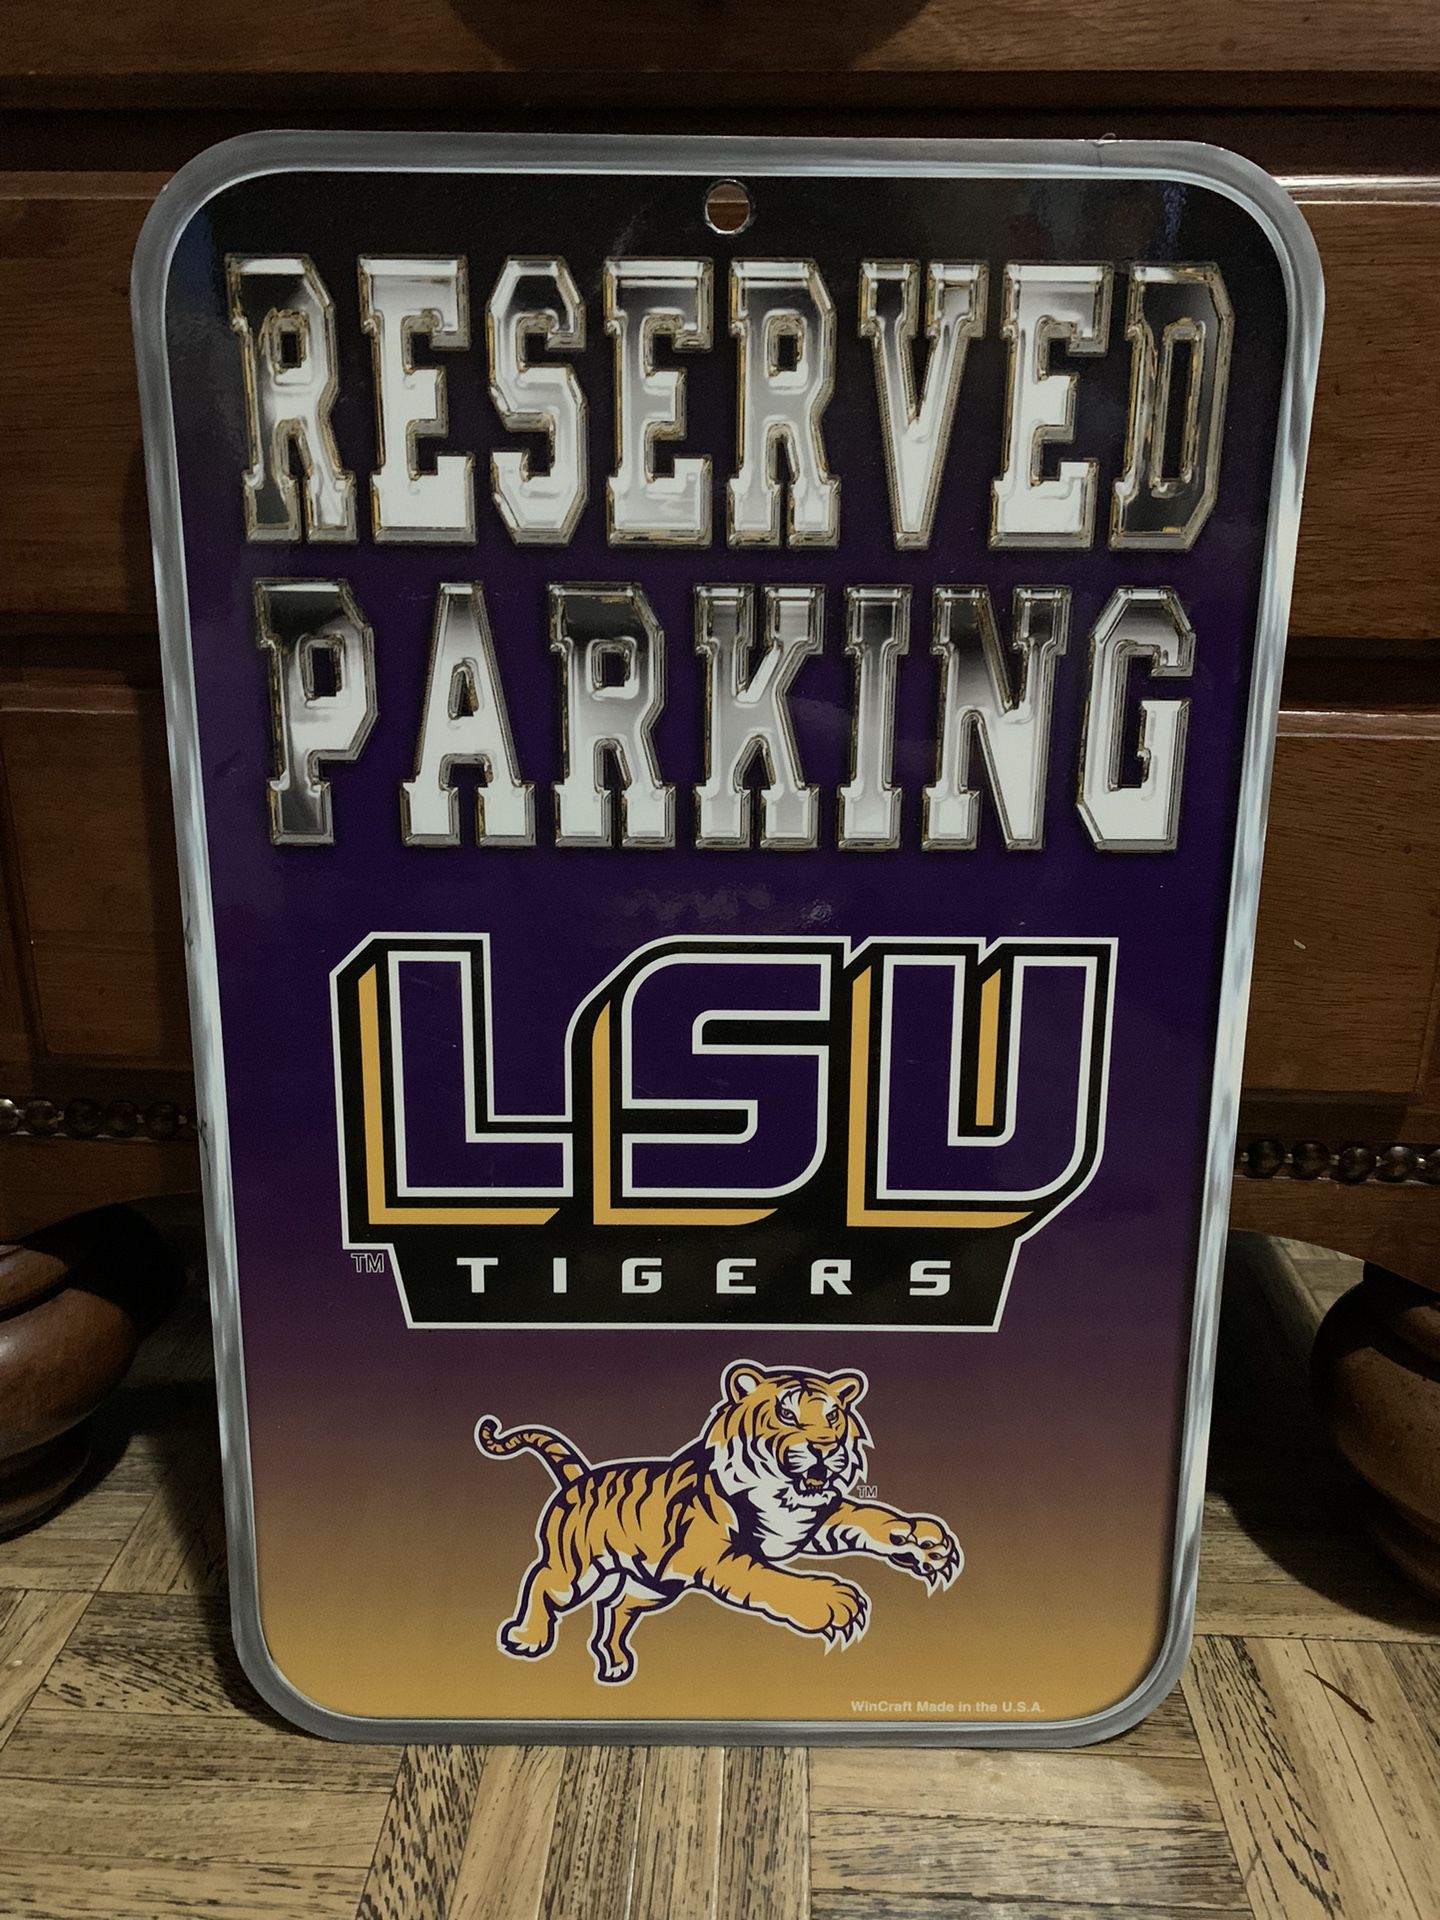 Louisiana State University signs!